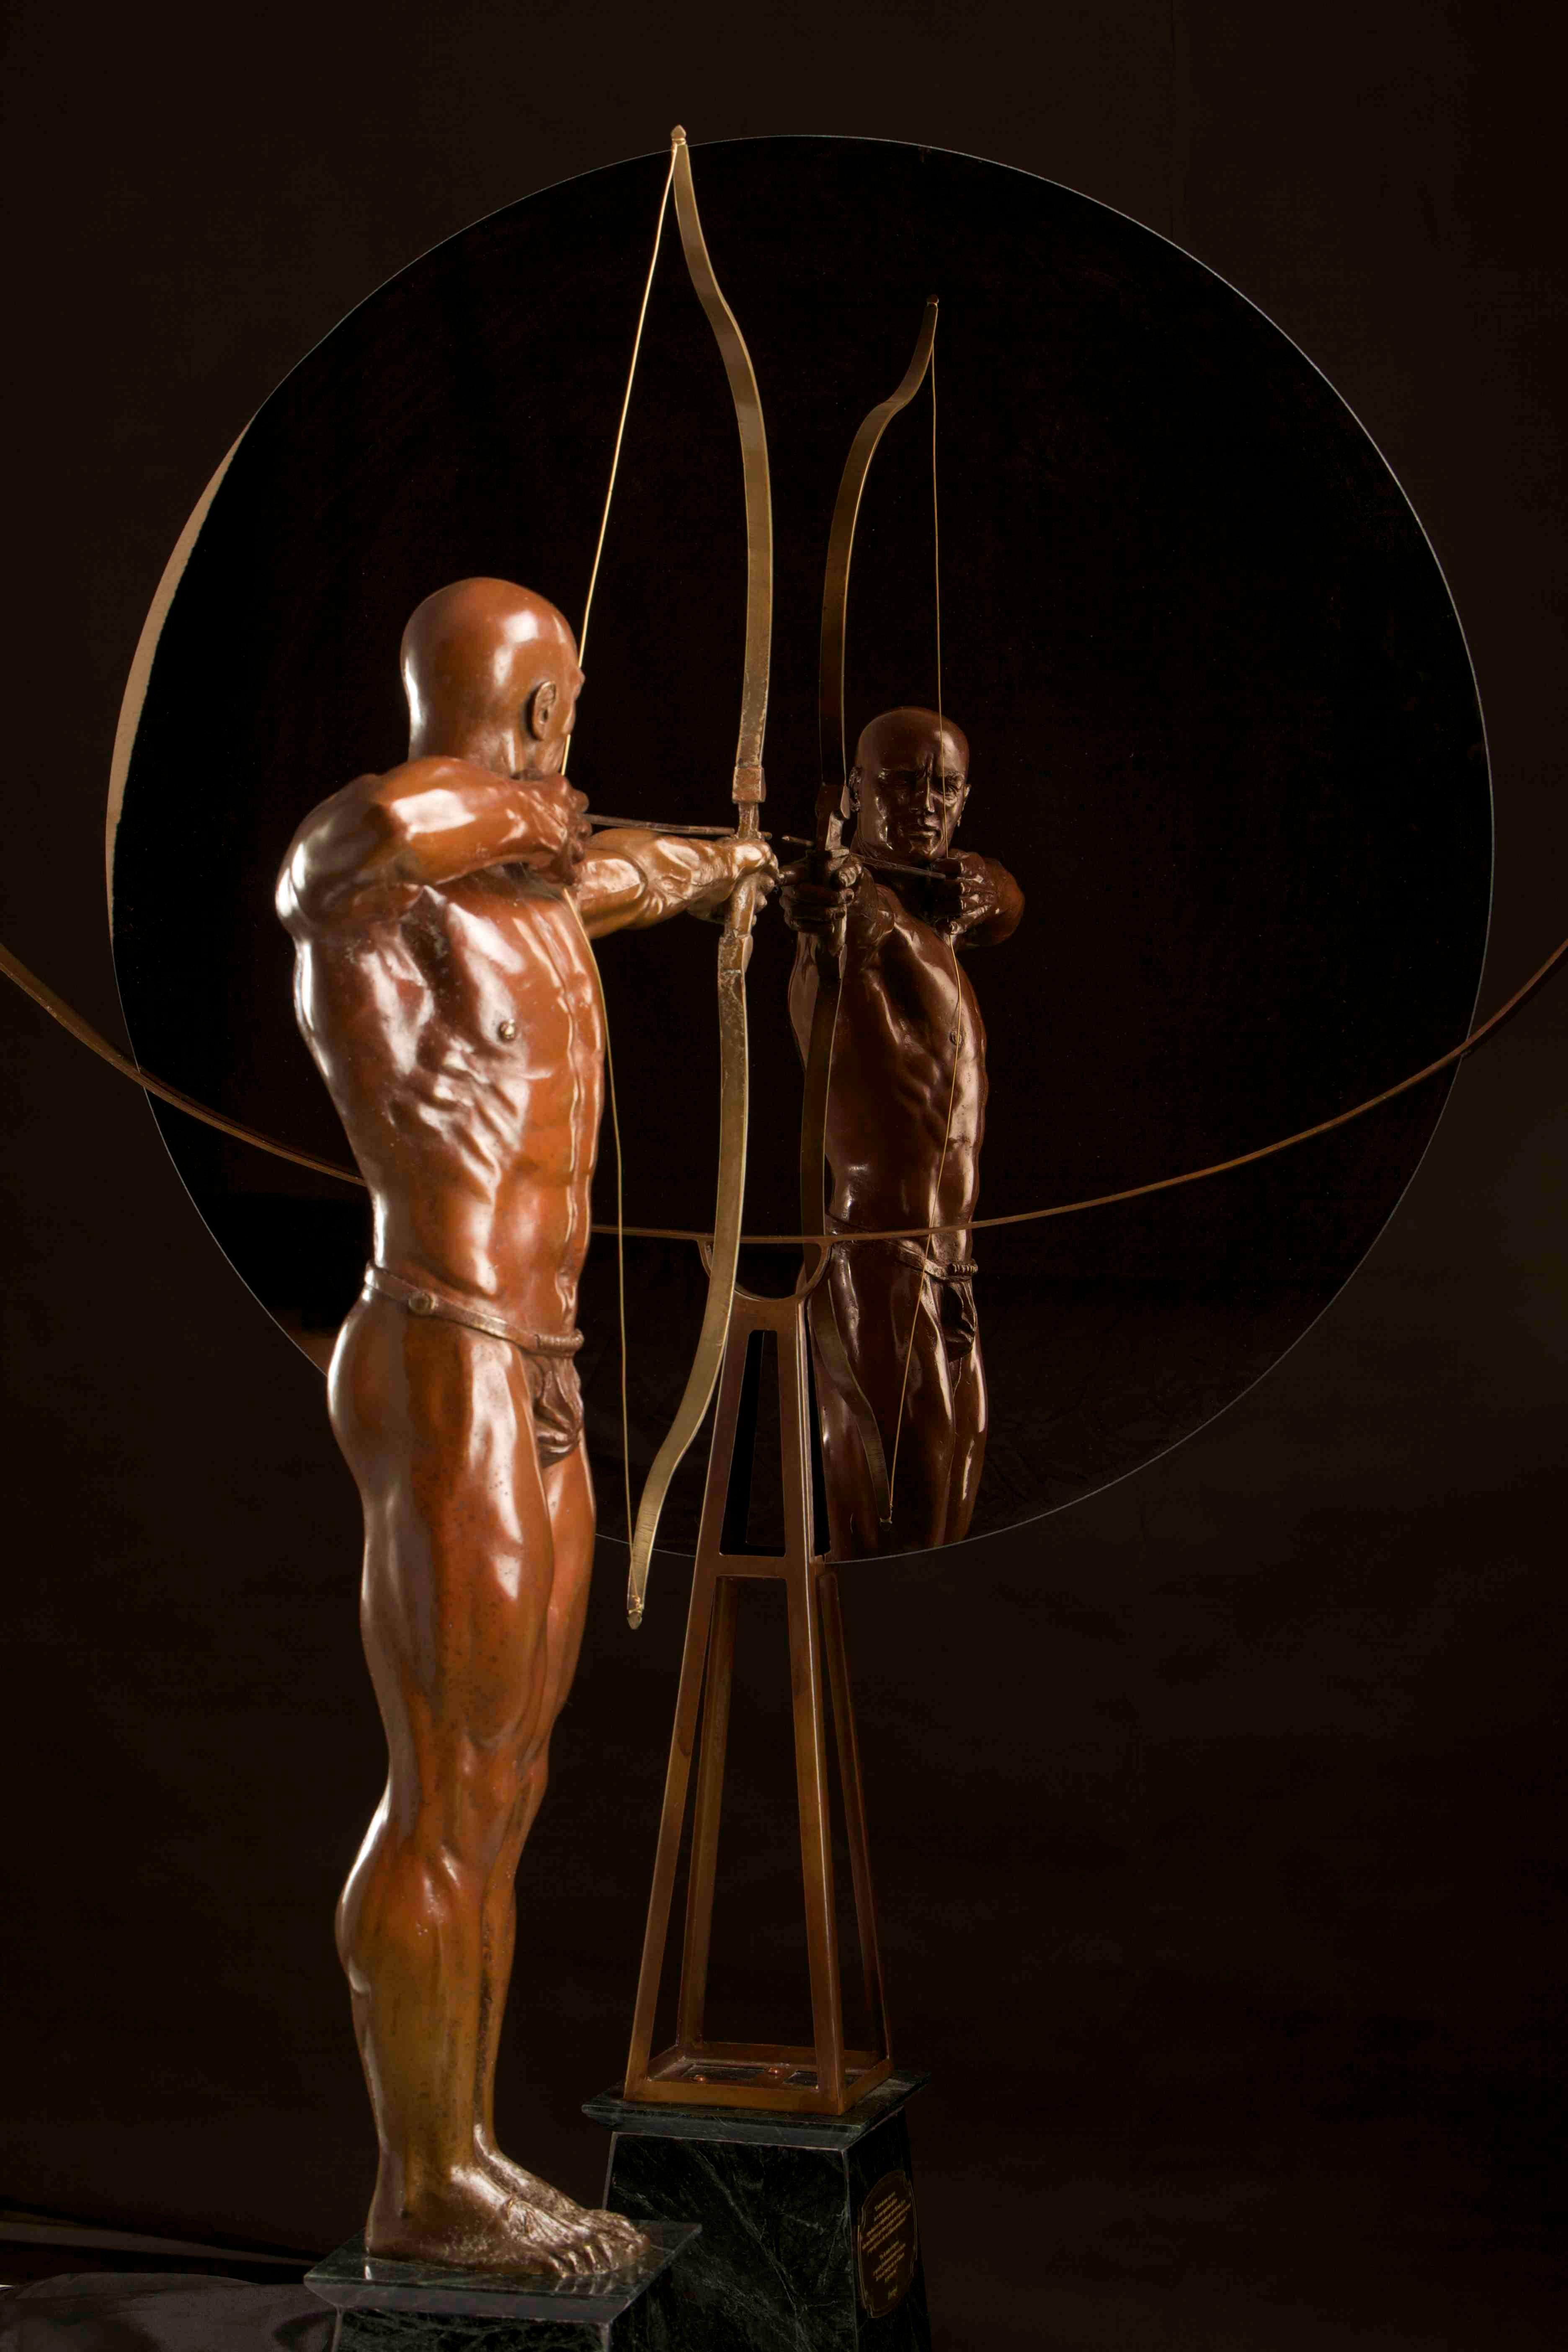 Objet : L'Archer, bronze une sculpture de l'artiste guatémaltèque Walter Peter Brenner. 
Patine brune en nitrate de fer avec une finition en cire.
Dimensions de la figure humaine : H122 cm, D14 cm, L75 cm.
Dimensions du miroir : H124 cm, L90 cm.